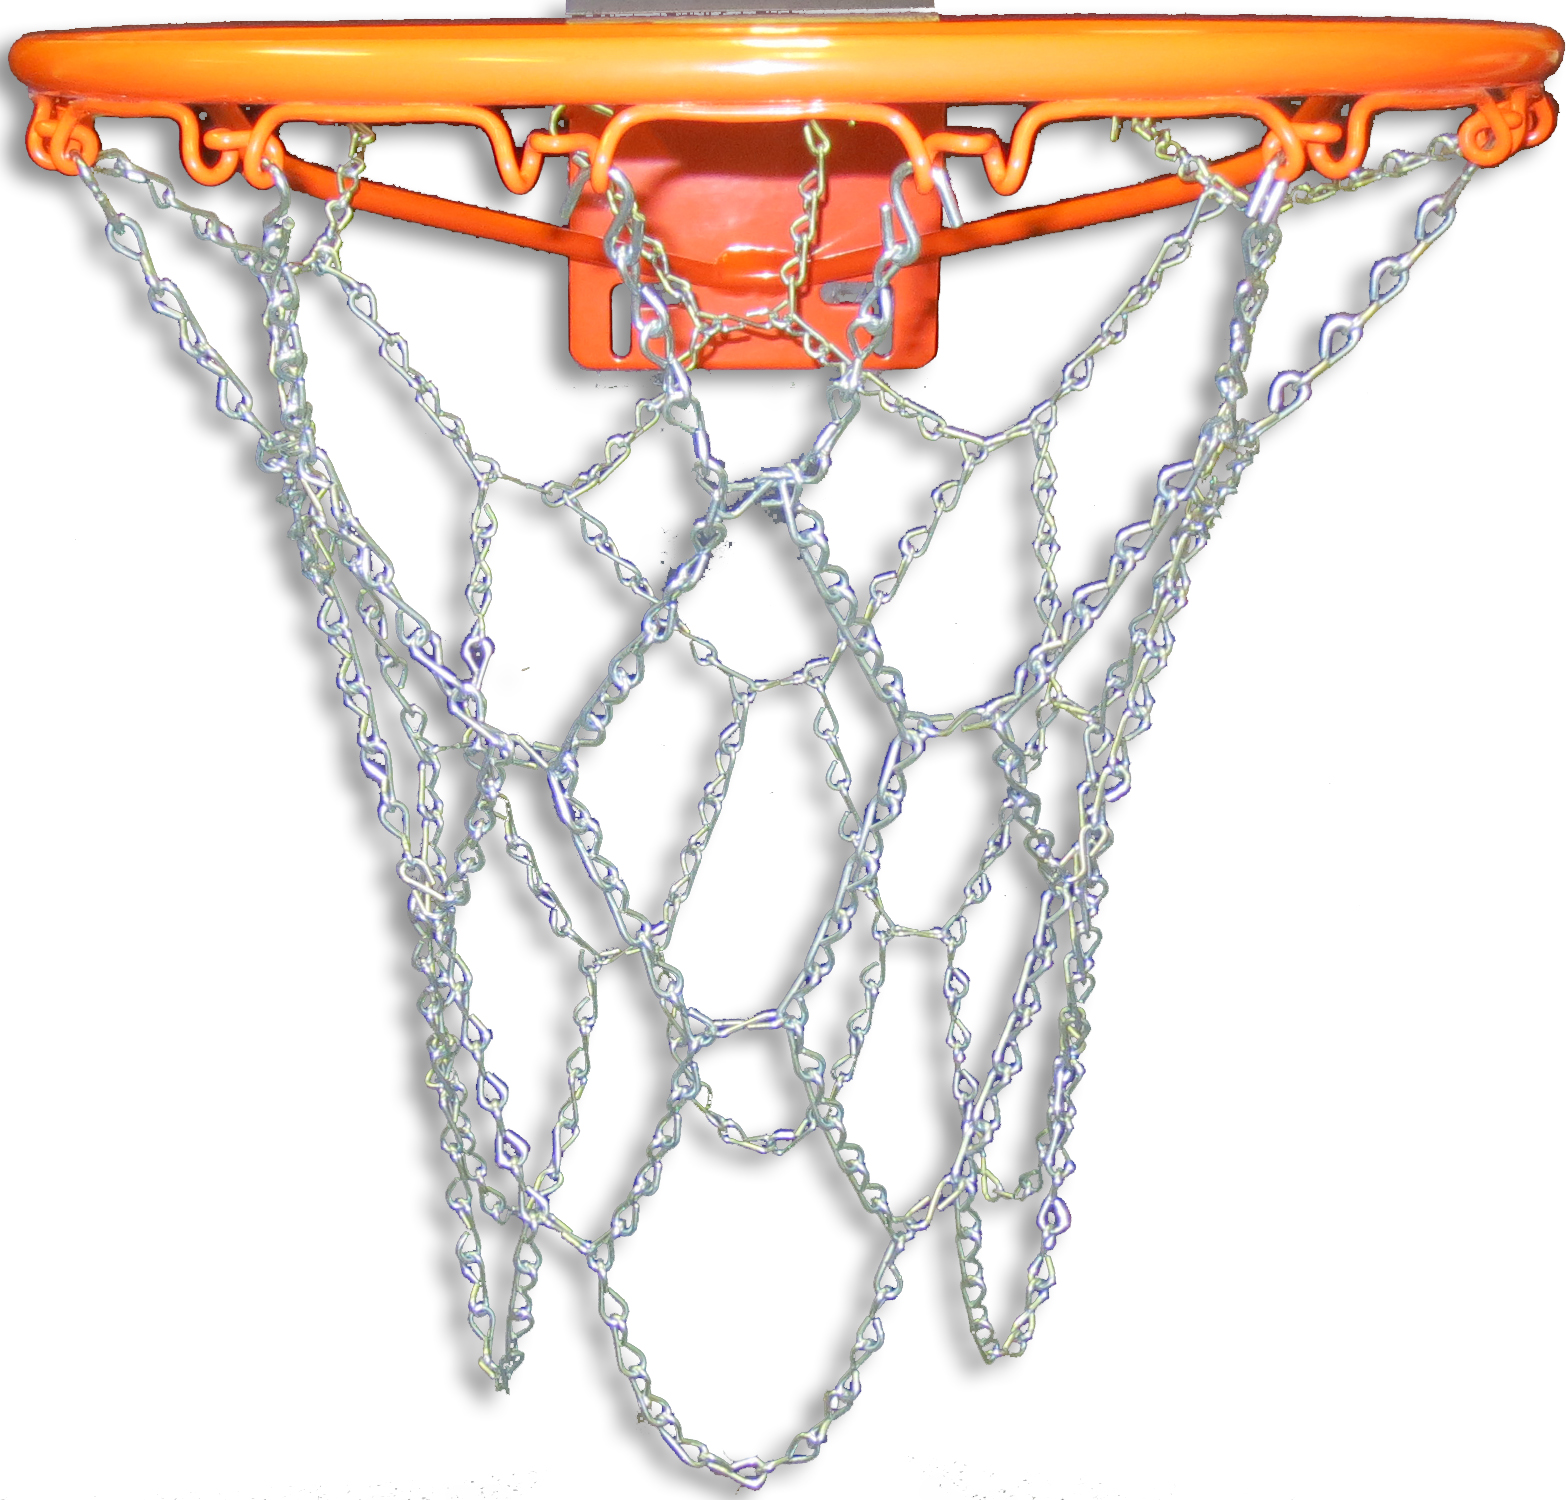 Anti-Whip Nylon Chain Basketball Net Galvanized Steel Strong Goal Rim Hoop Mesh 